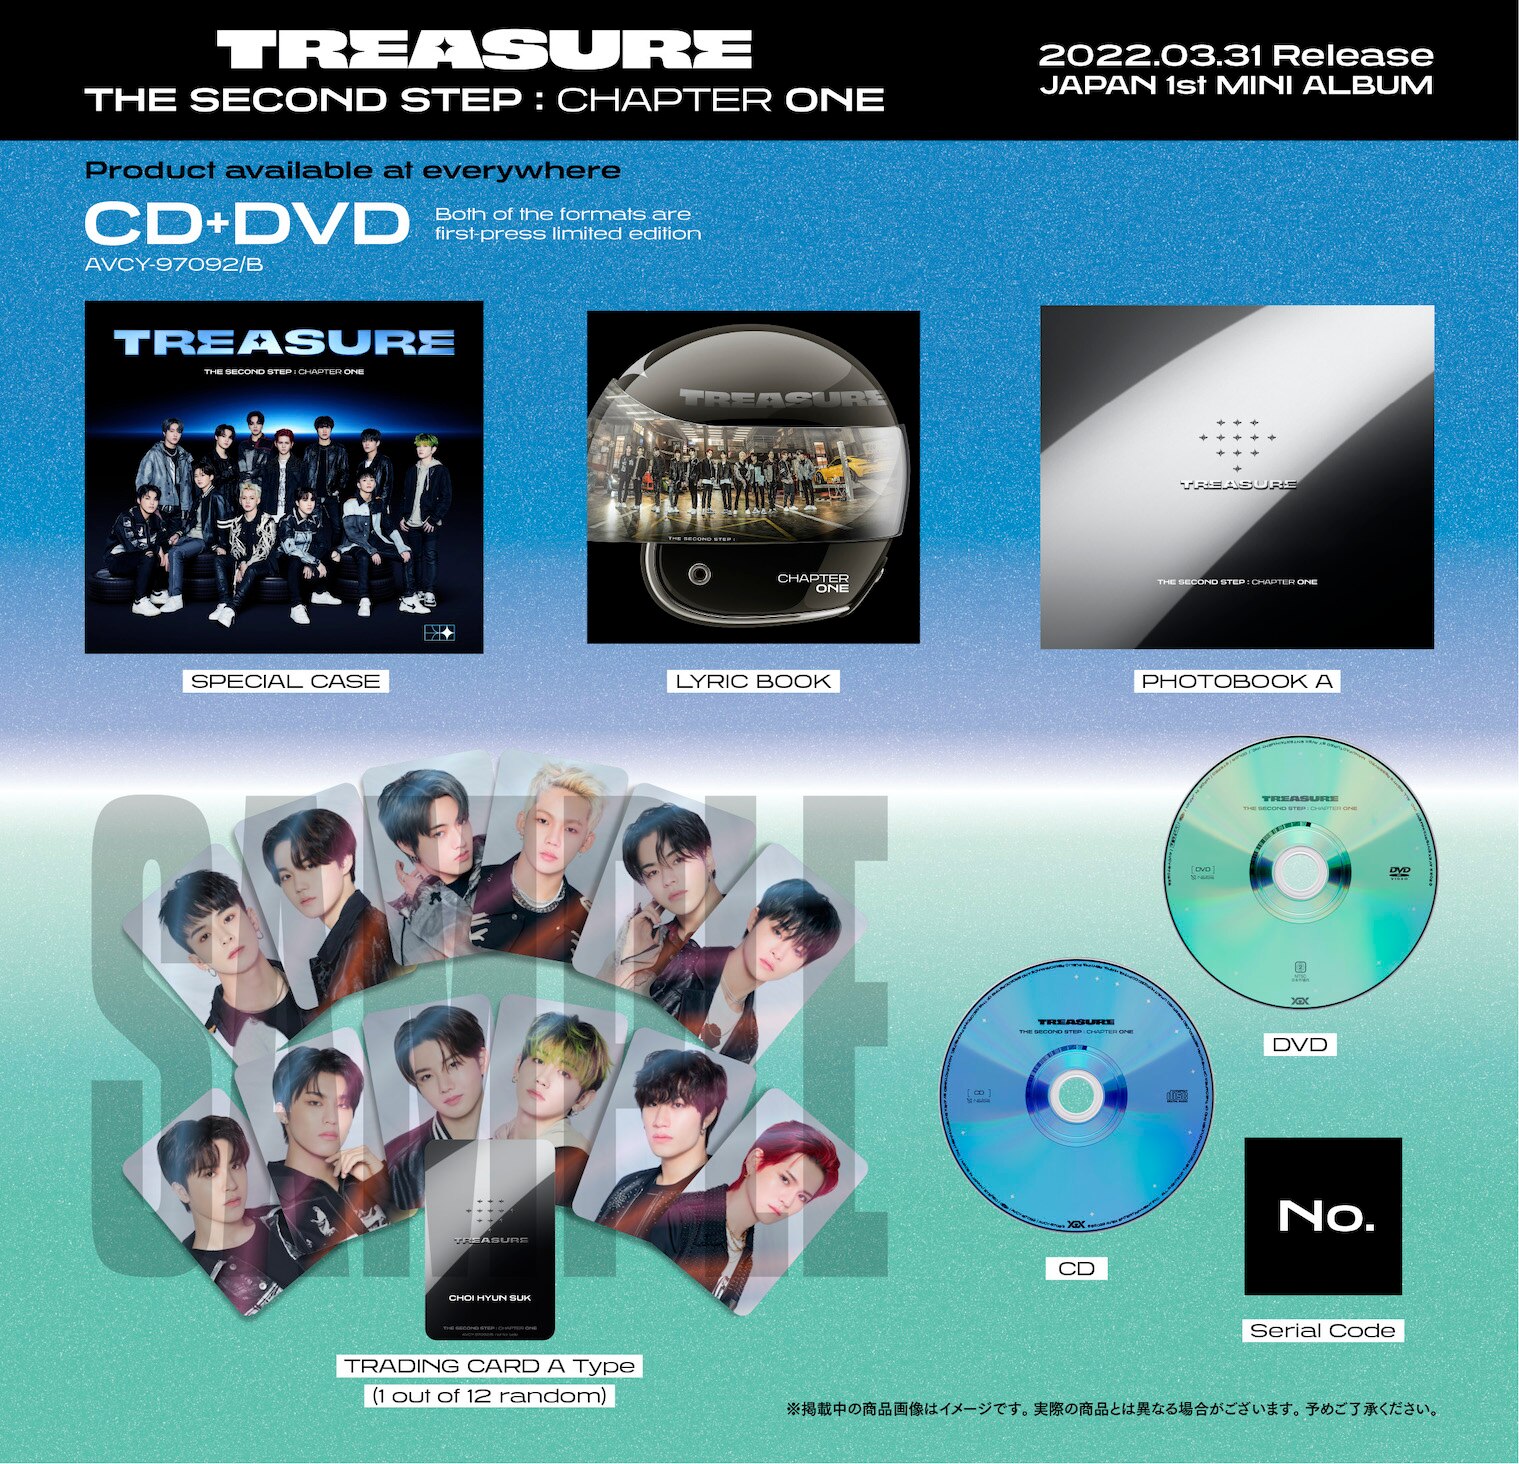 CD・DVD・ブルーレイtreasure CD